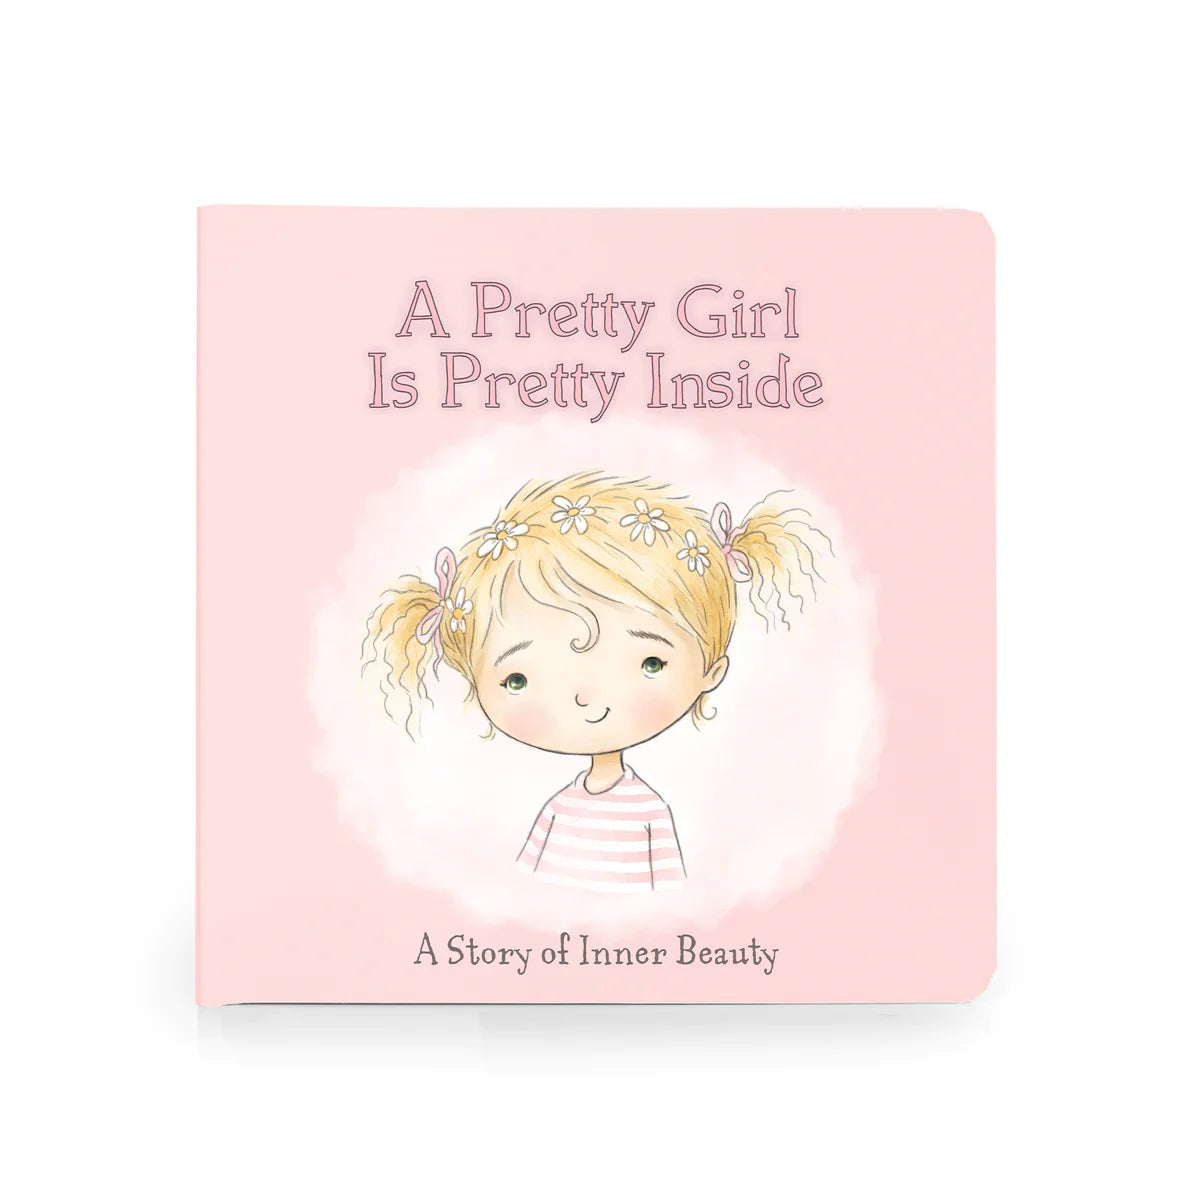 A pretty girl book